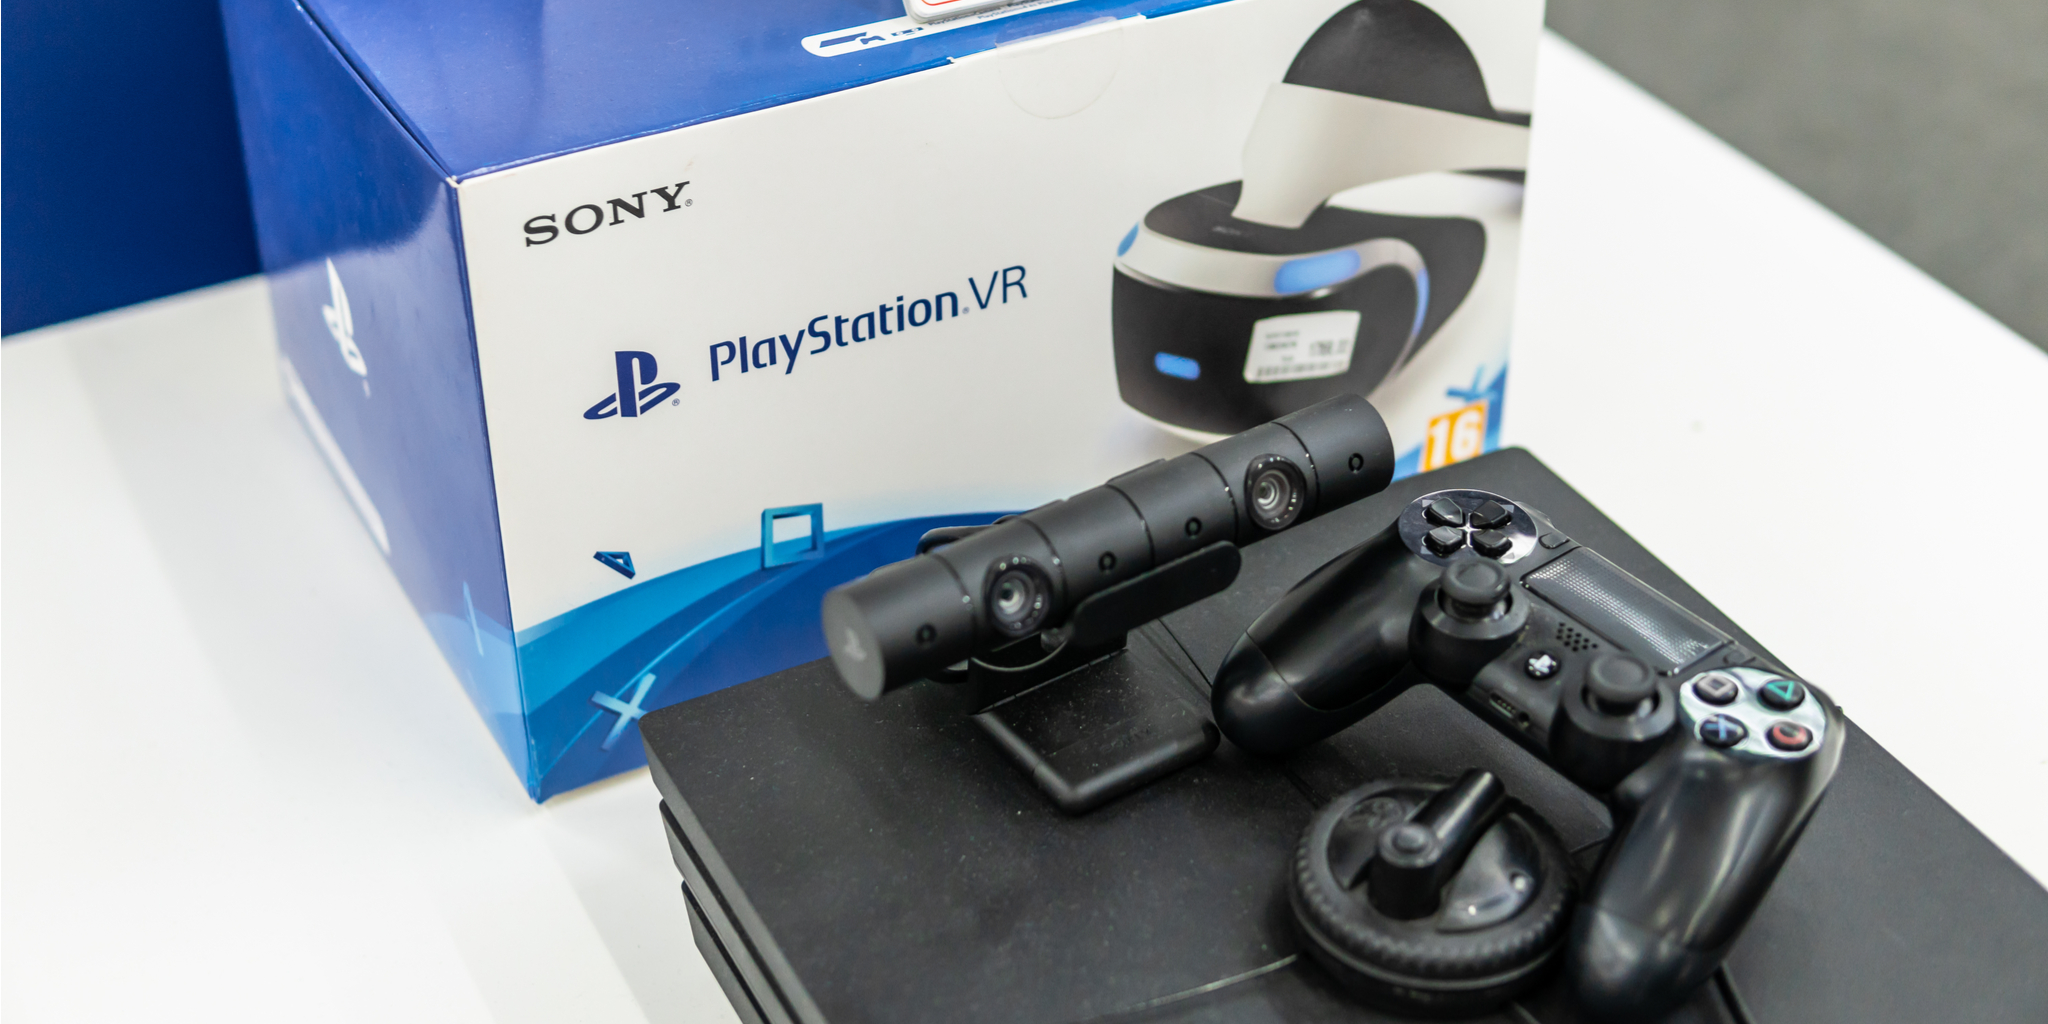 PlayStation VR 설정 방법: PS4에서 PSVR 시작하기